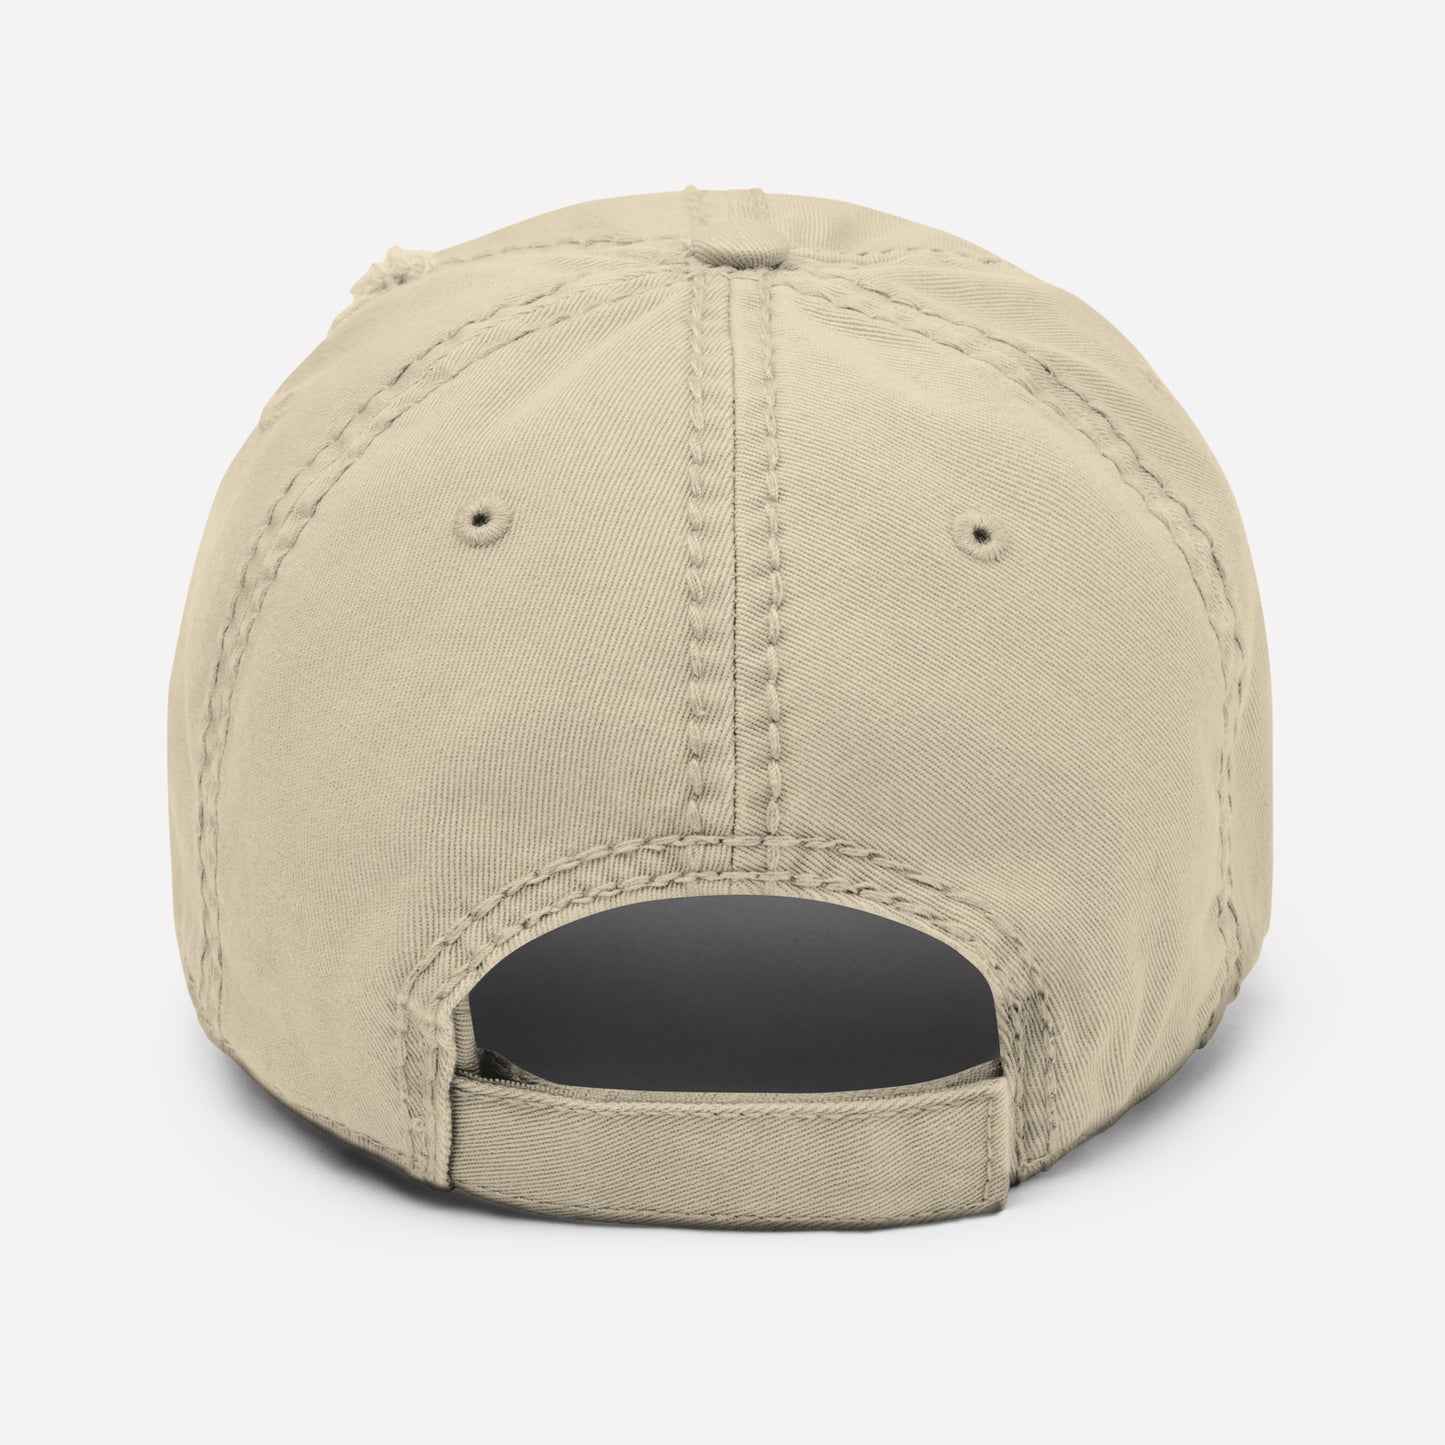 (jœte’borj) - Distressed Dad Hat